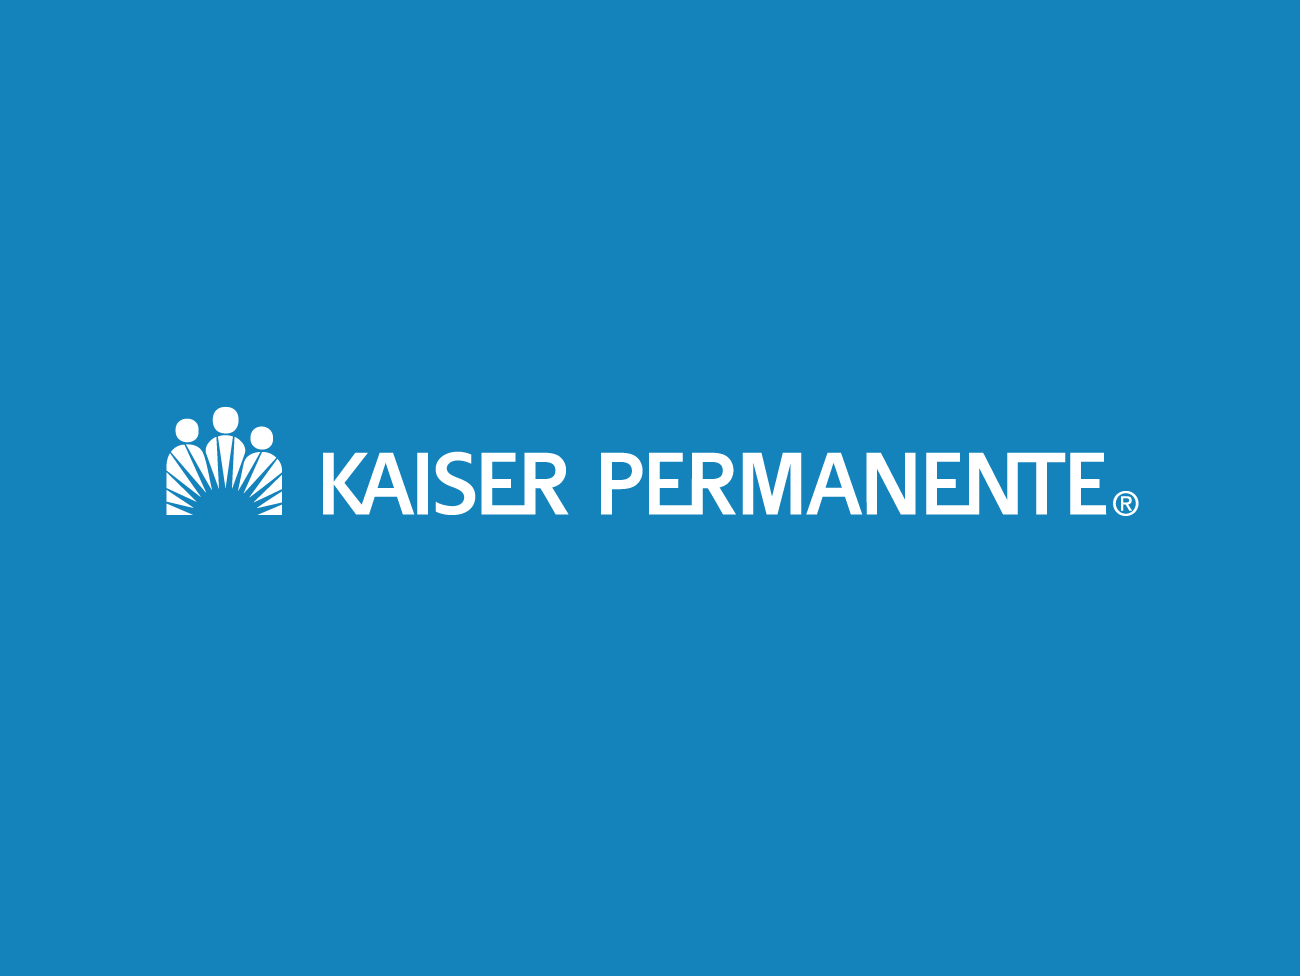 在蓝色背景白raybat官网色Kaiser Permanente标志。